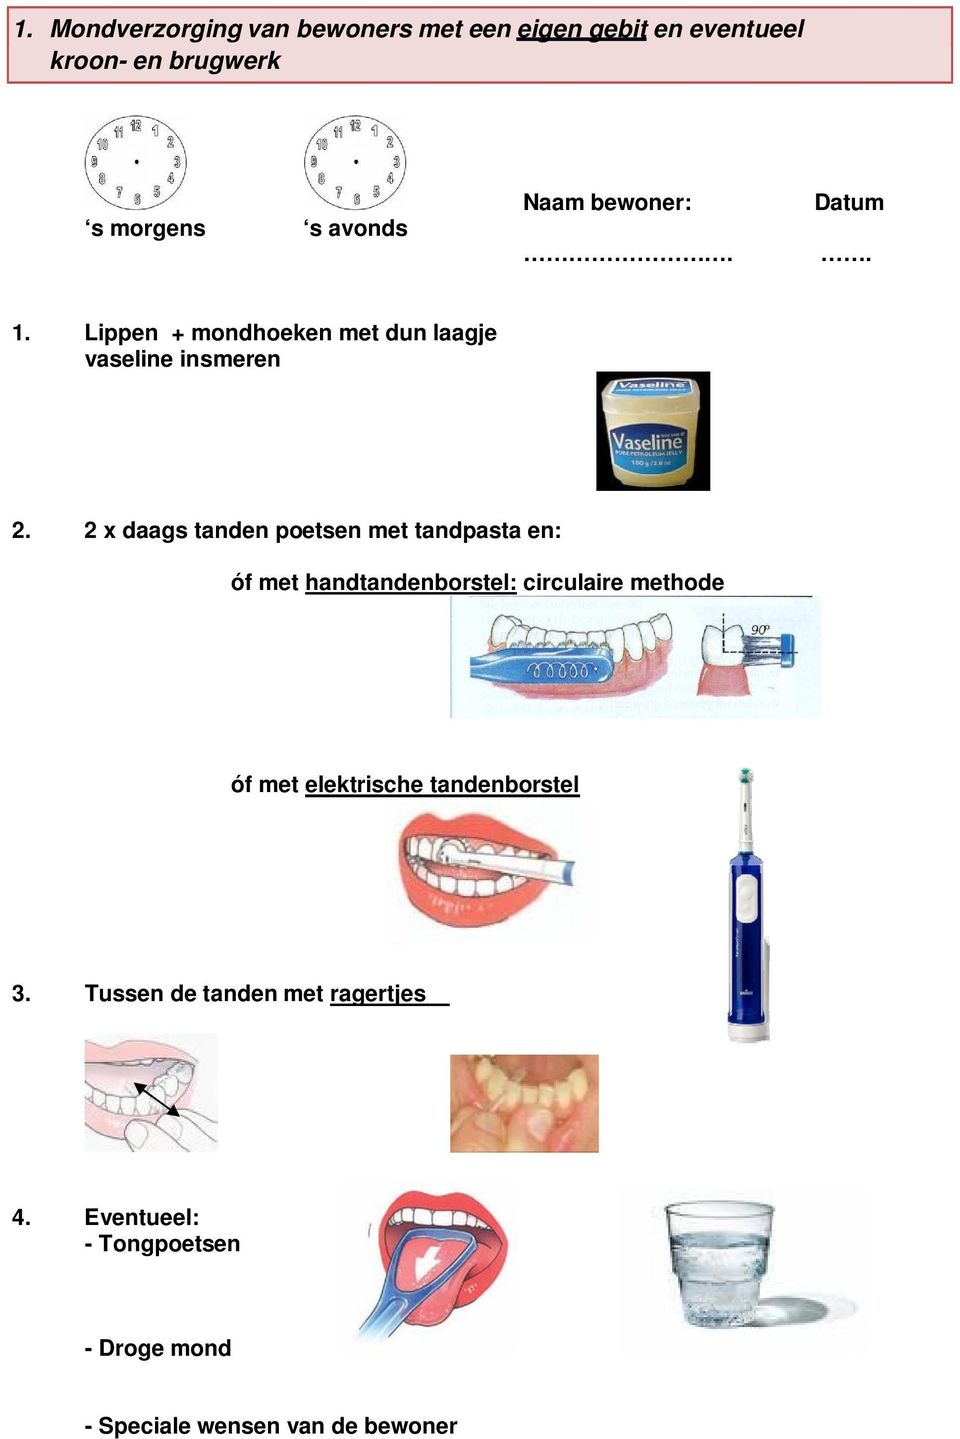 2 x daags tanden poetsen met tandpasta en: óf met handtandenborstel: circulaire